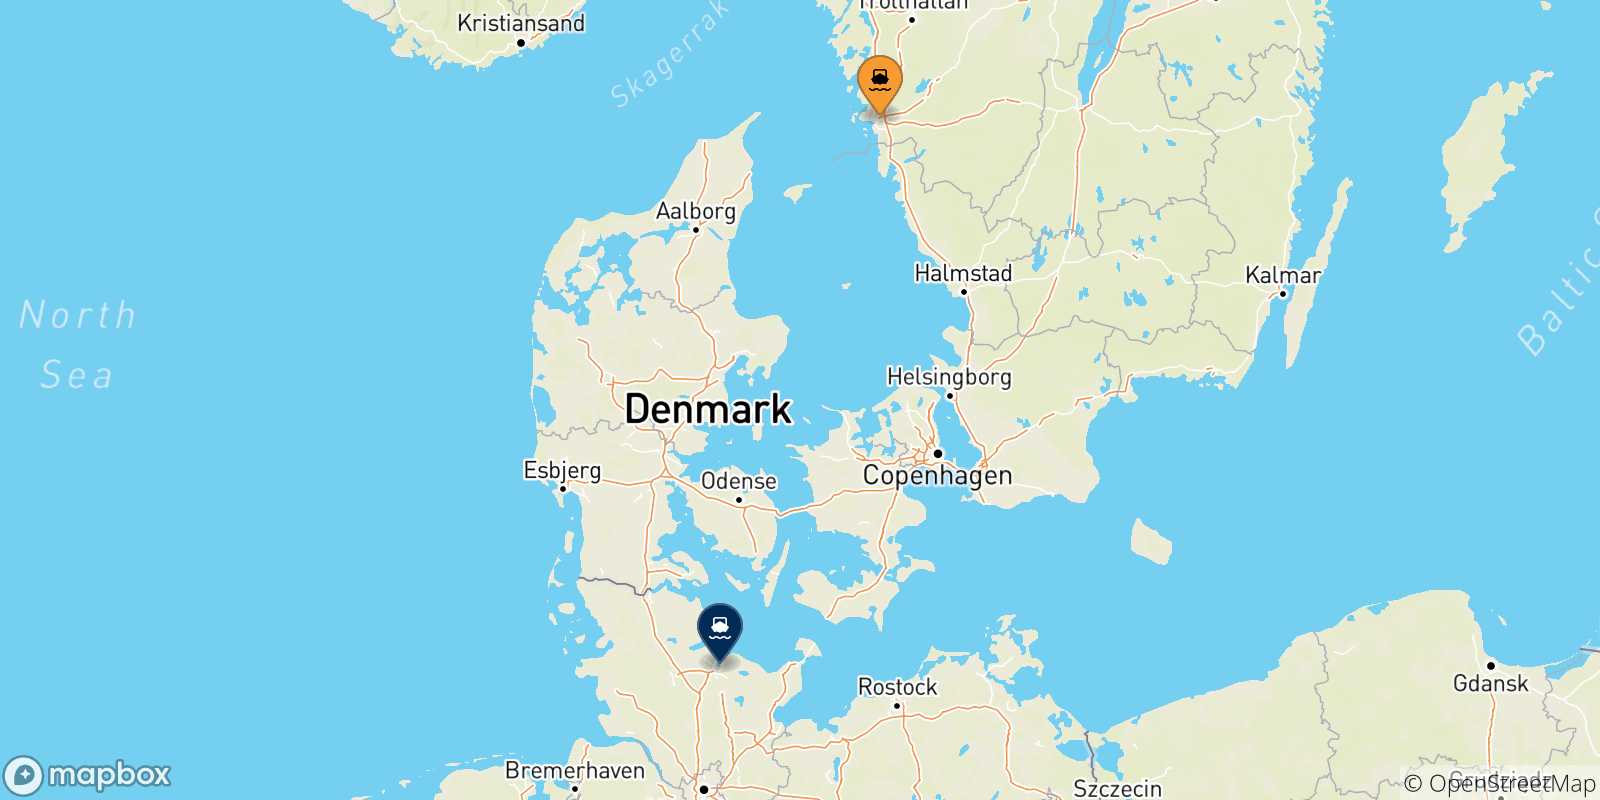 Mappa delle possibili rotte tra la Svezia e Kiel